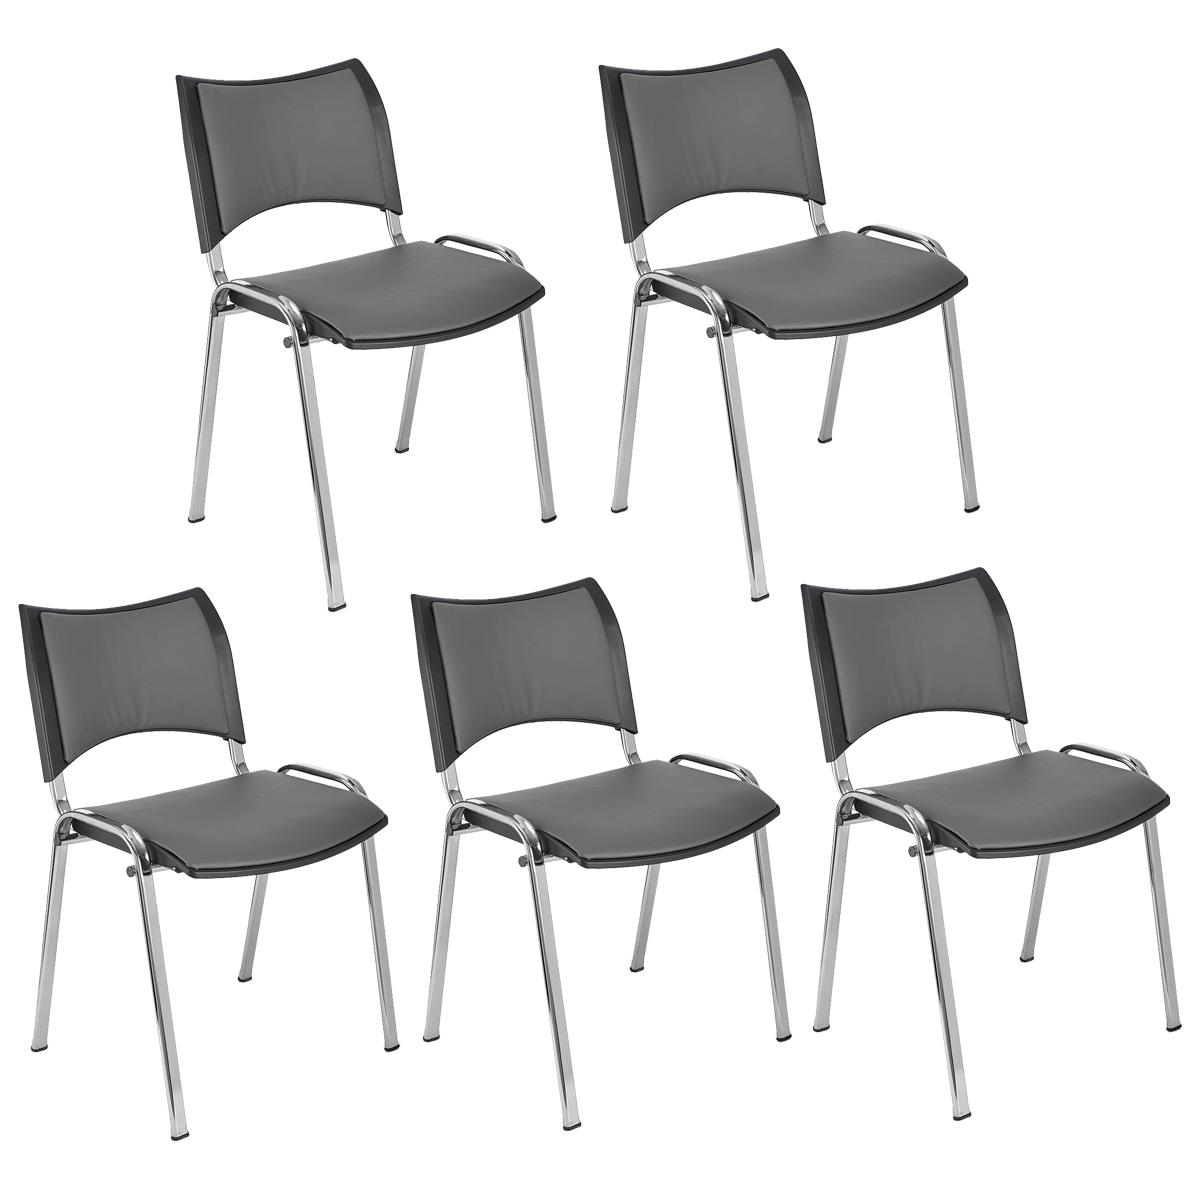 Lote 5 Cadeiras de Visita ROMEL PELE, Prática e Empilhável, Pernas Cromadas, Cinzento